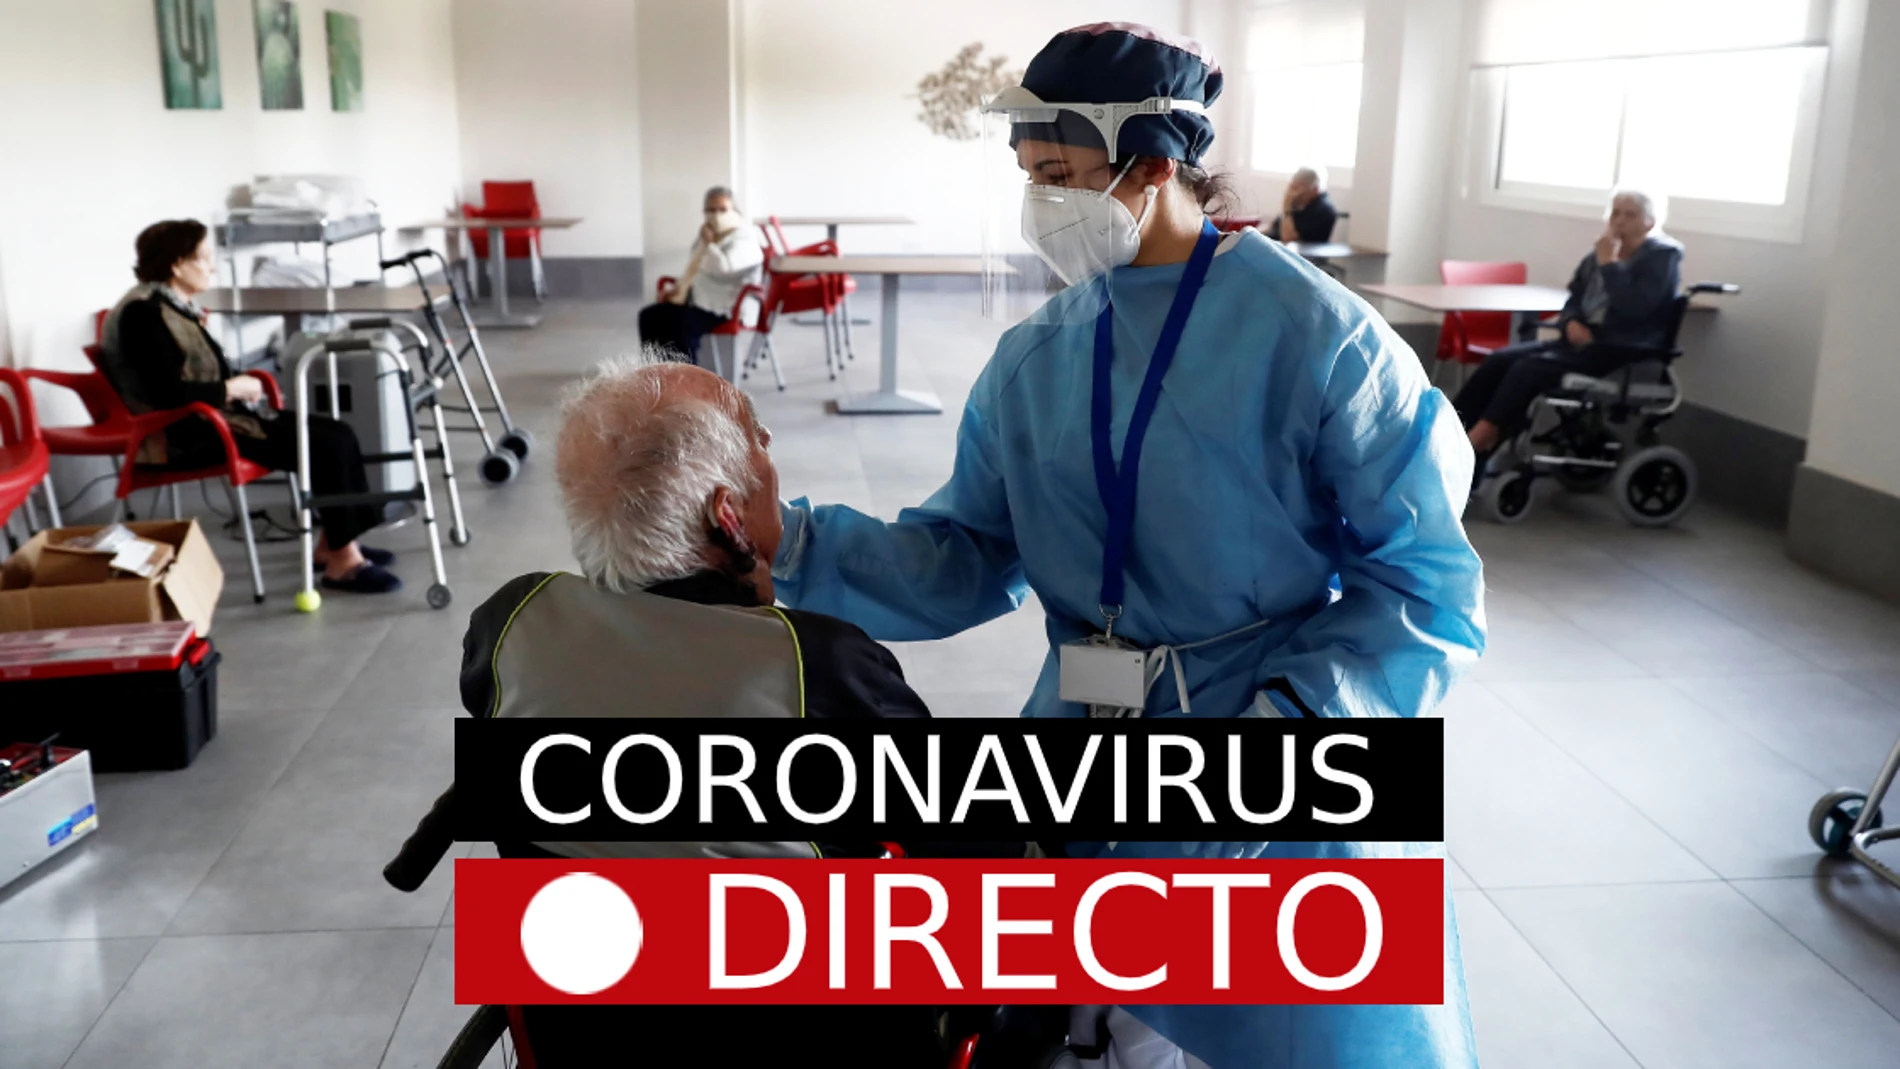 Última hora del coronavirus en España: los estudiantes vuelven a clase mientras ómicron sigue avanzando, en directo